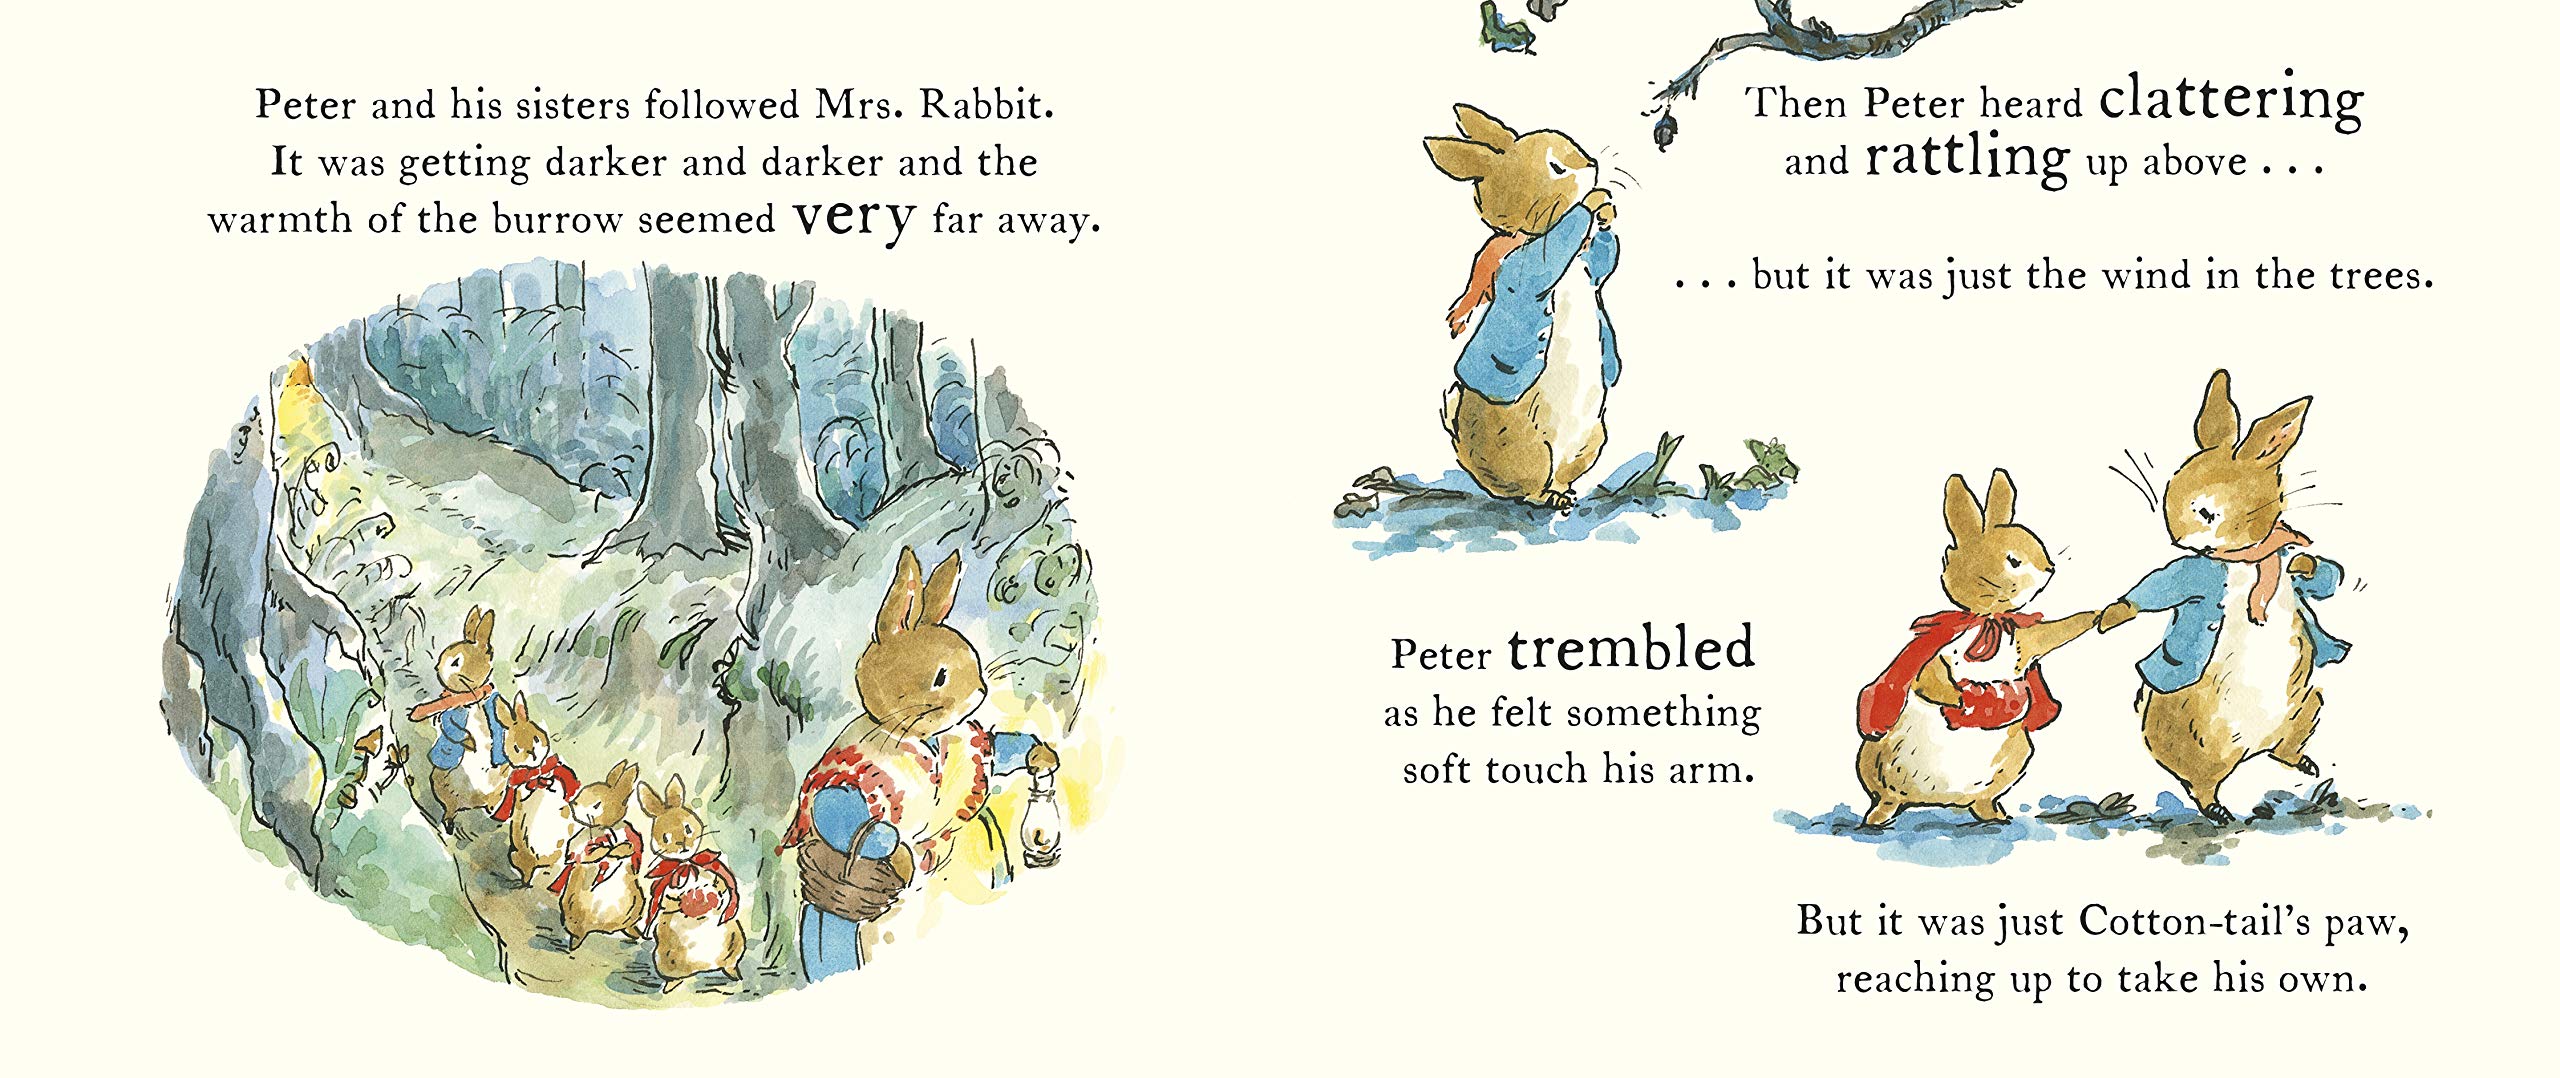 Peter Rabbit Tales - A Pumpkin for Peter